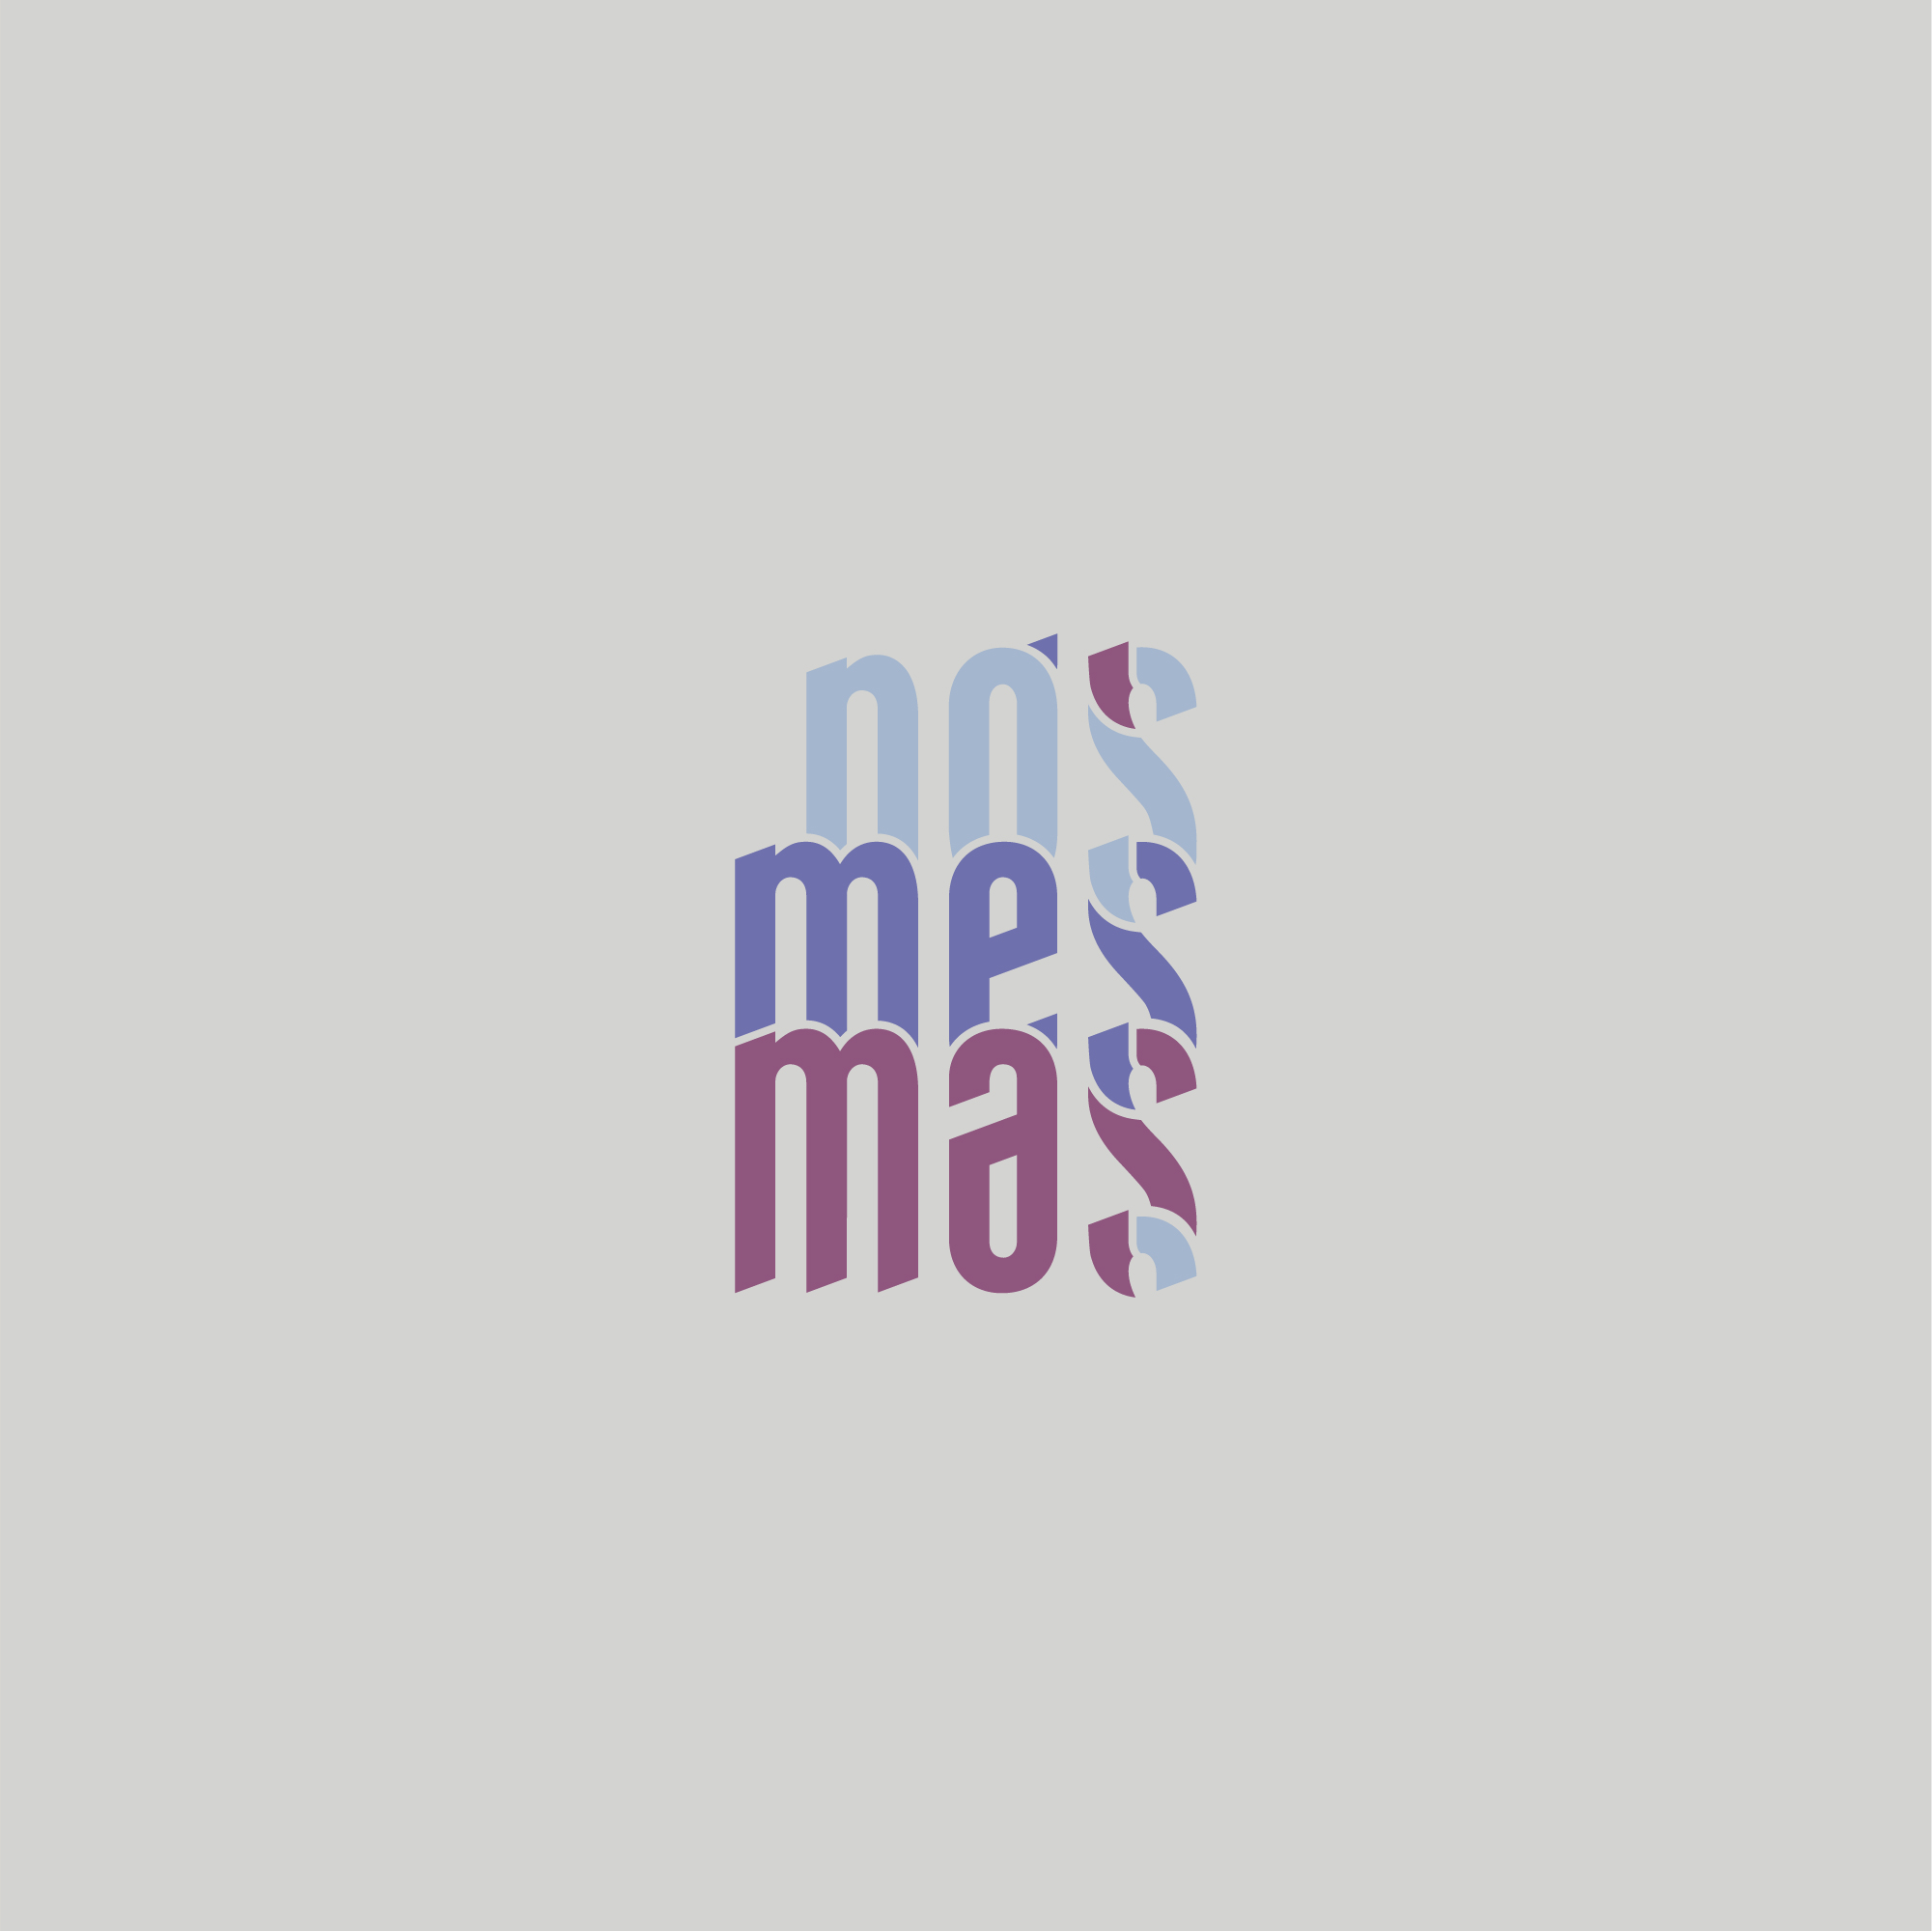 Diseño Logotipo Nós Mesmas